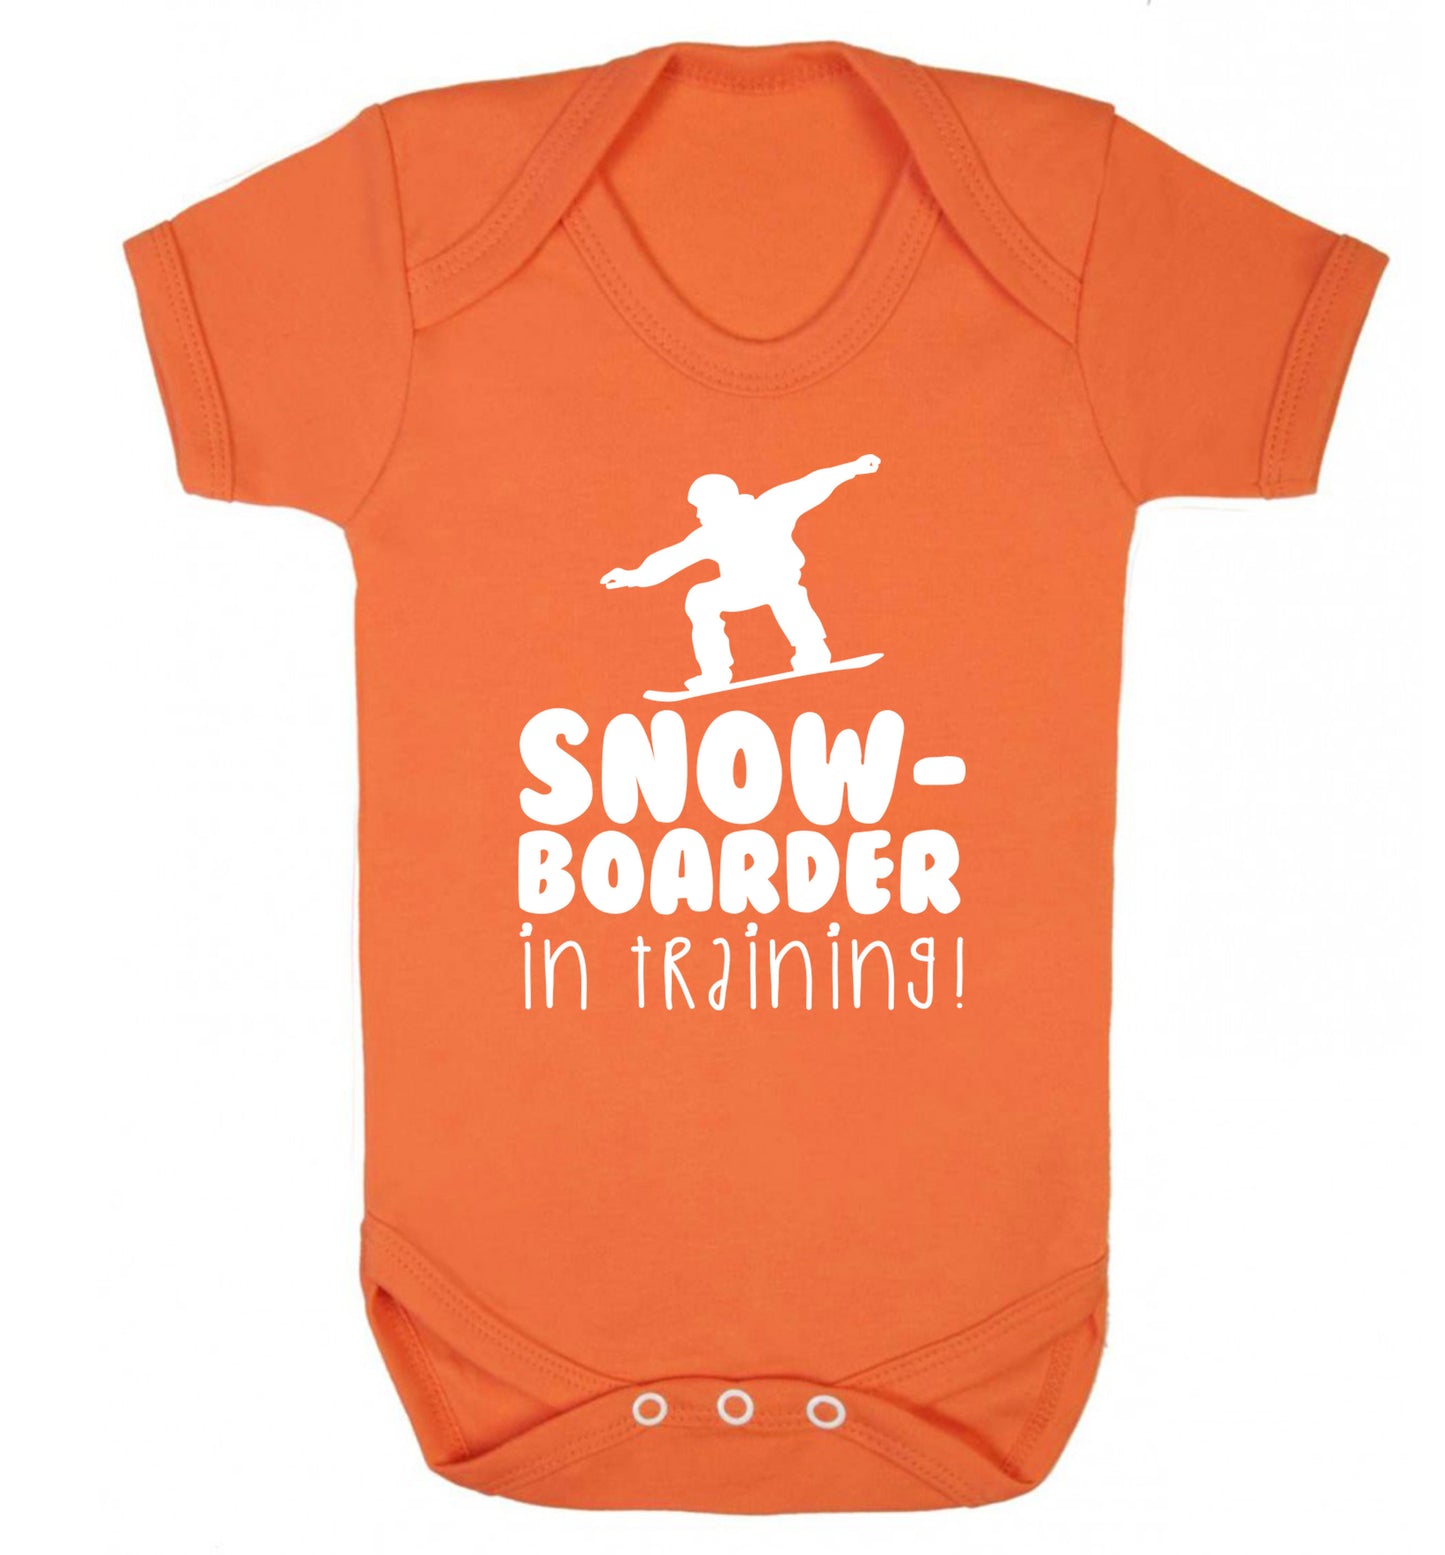 Snowboarder in training Baby Vest orange 18-24 months